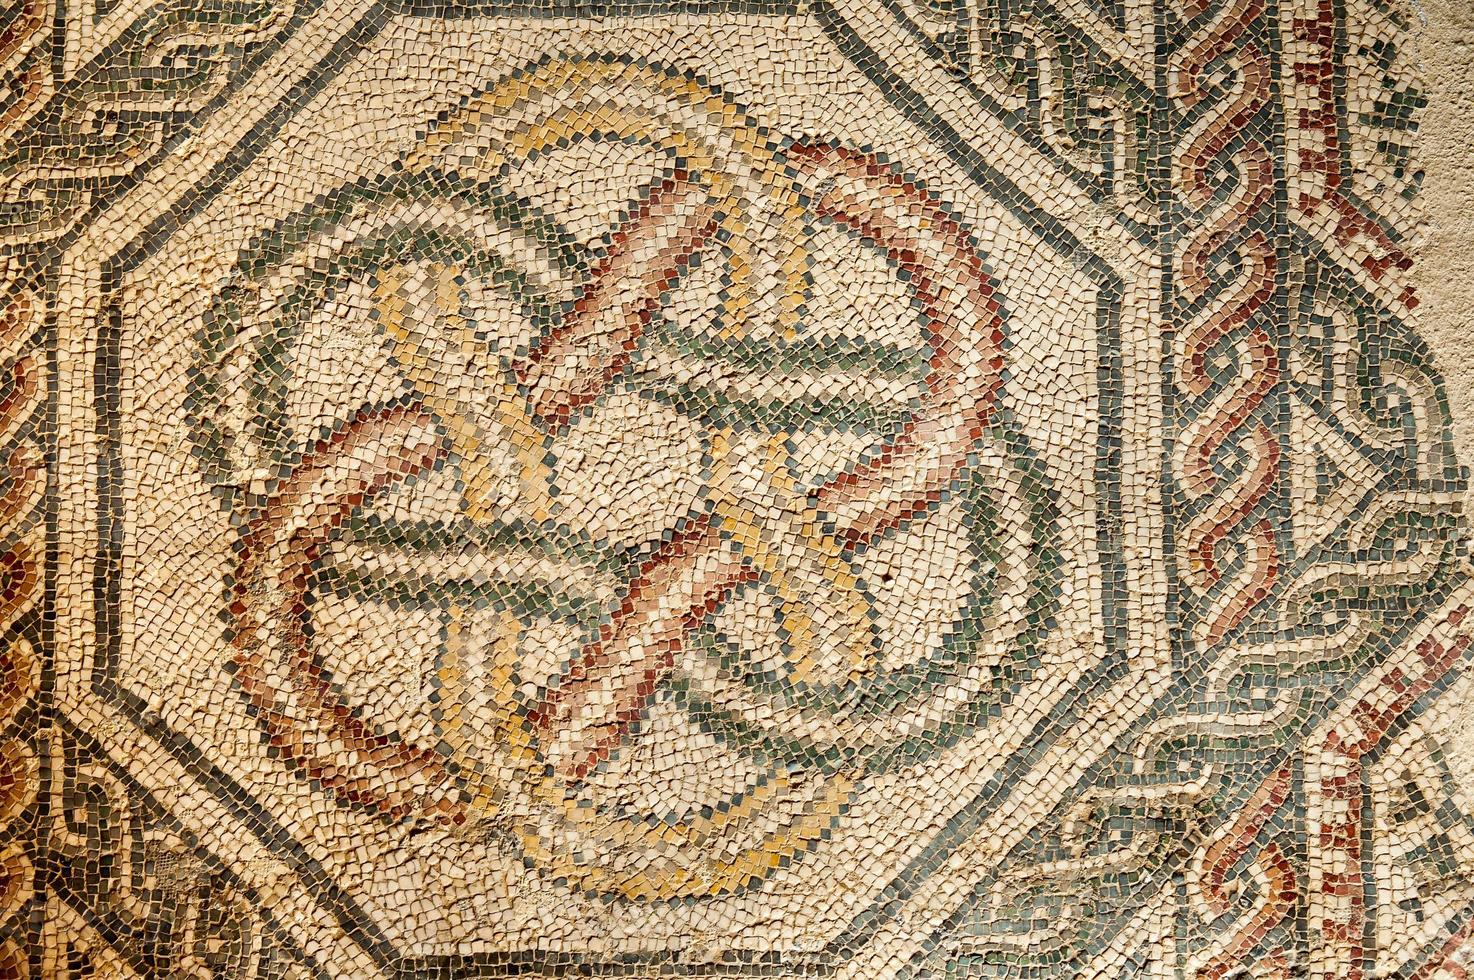 mosaïques romaines photo